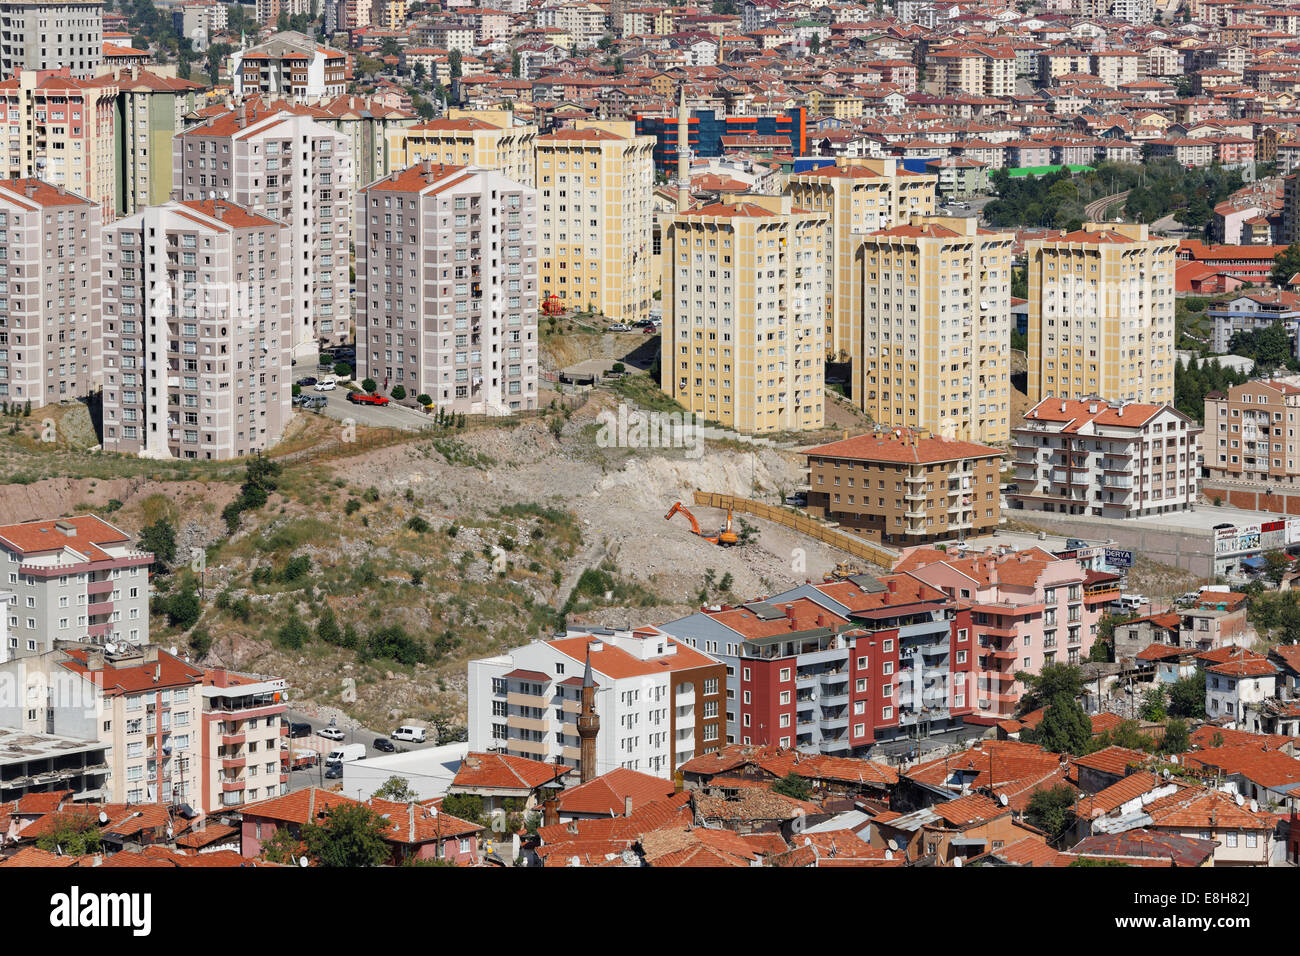 Turkey, Ankara, View of the city Stock Photo